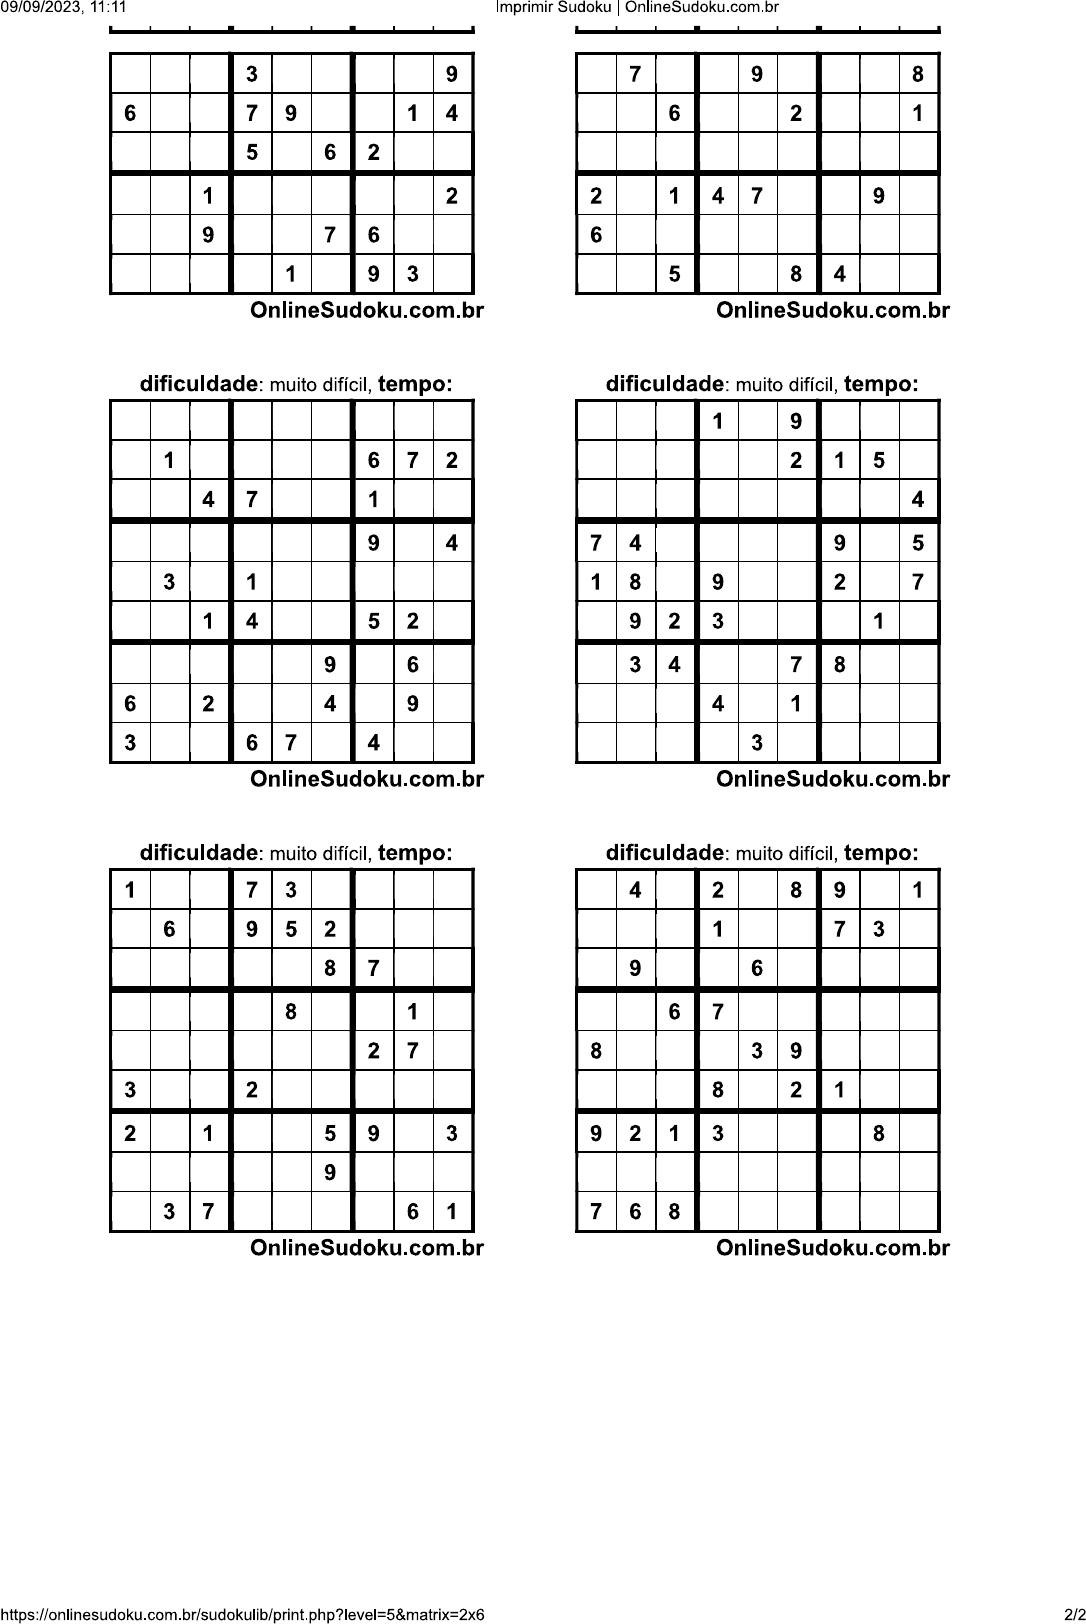 sudoku difícil 2x6 - Matemática